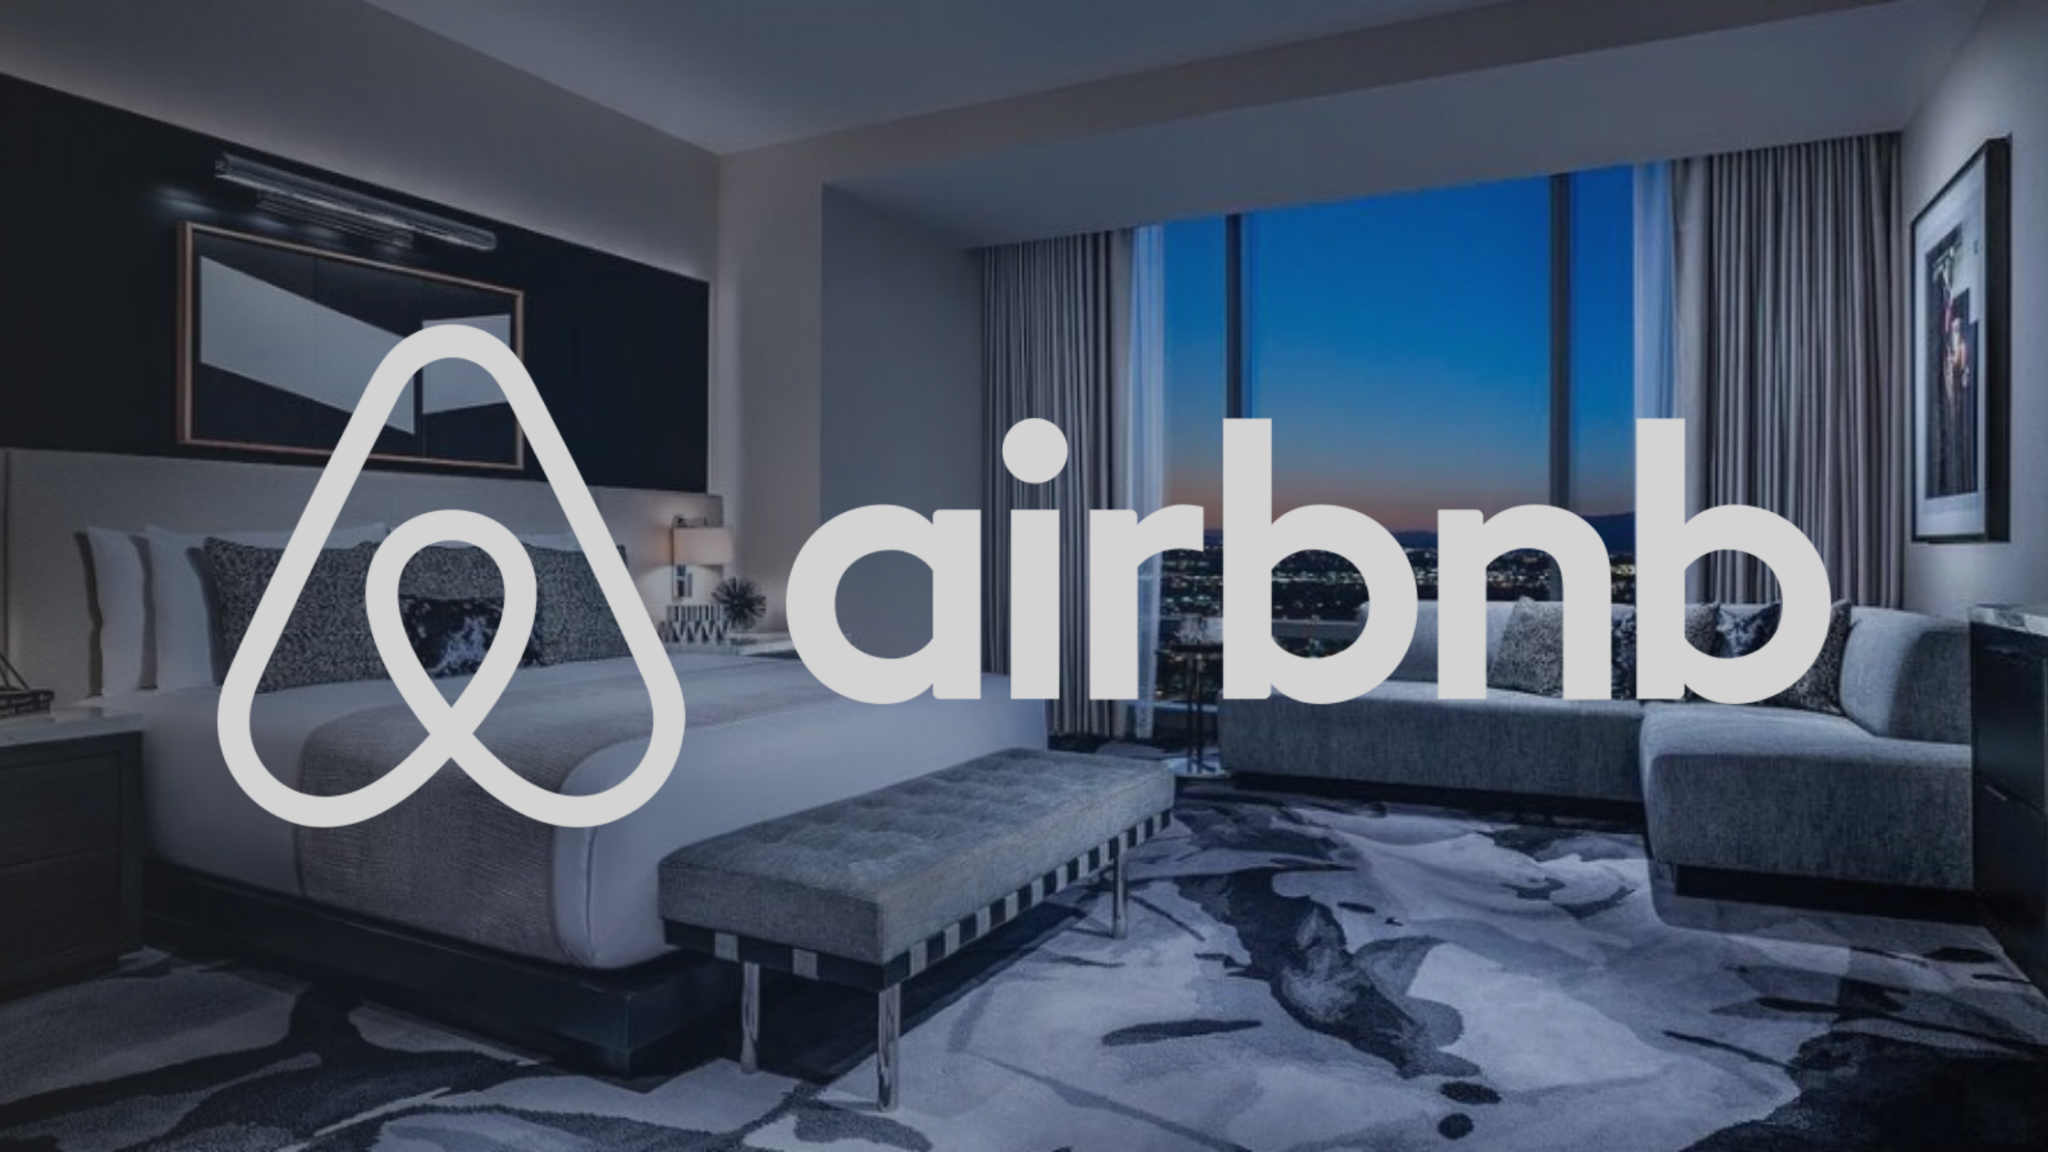 Comment utiliser Airbnb : guide rapide pour les débutants